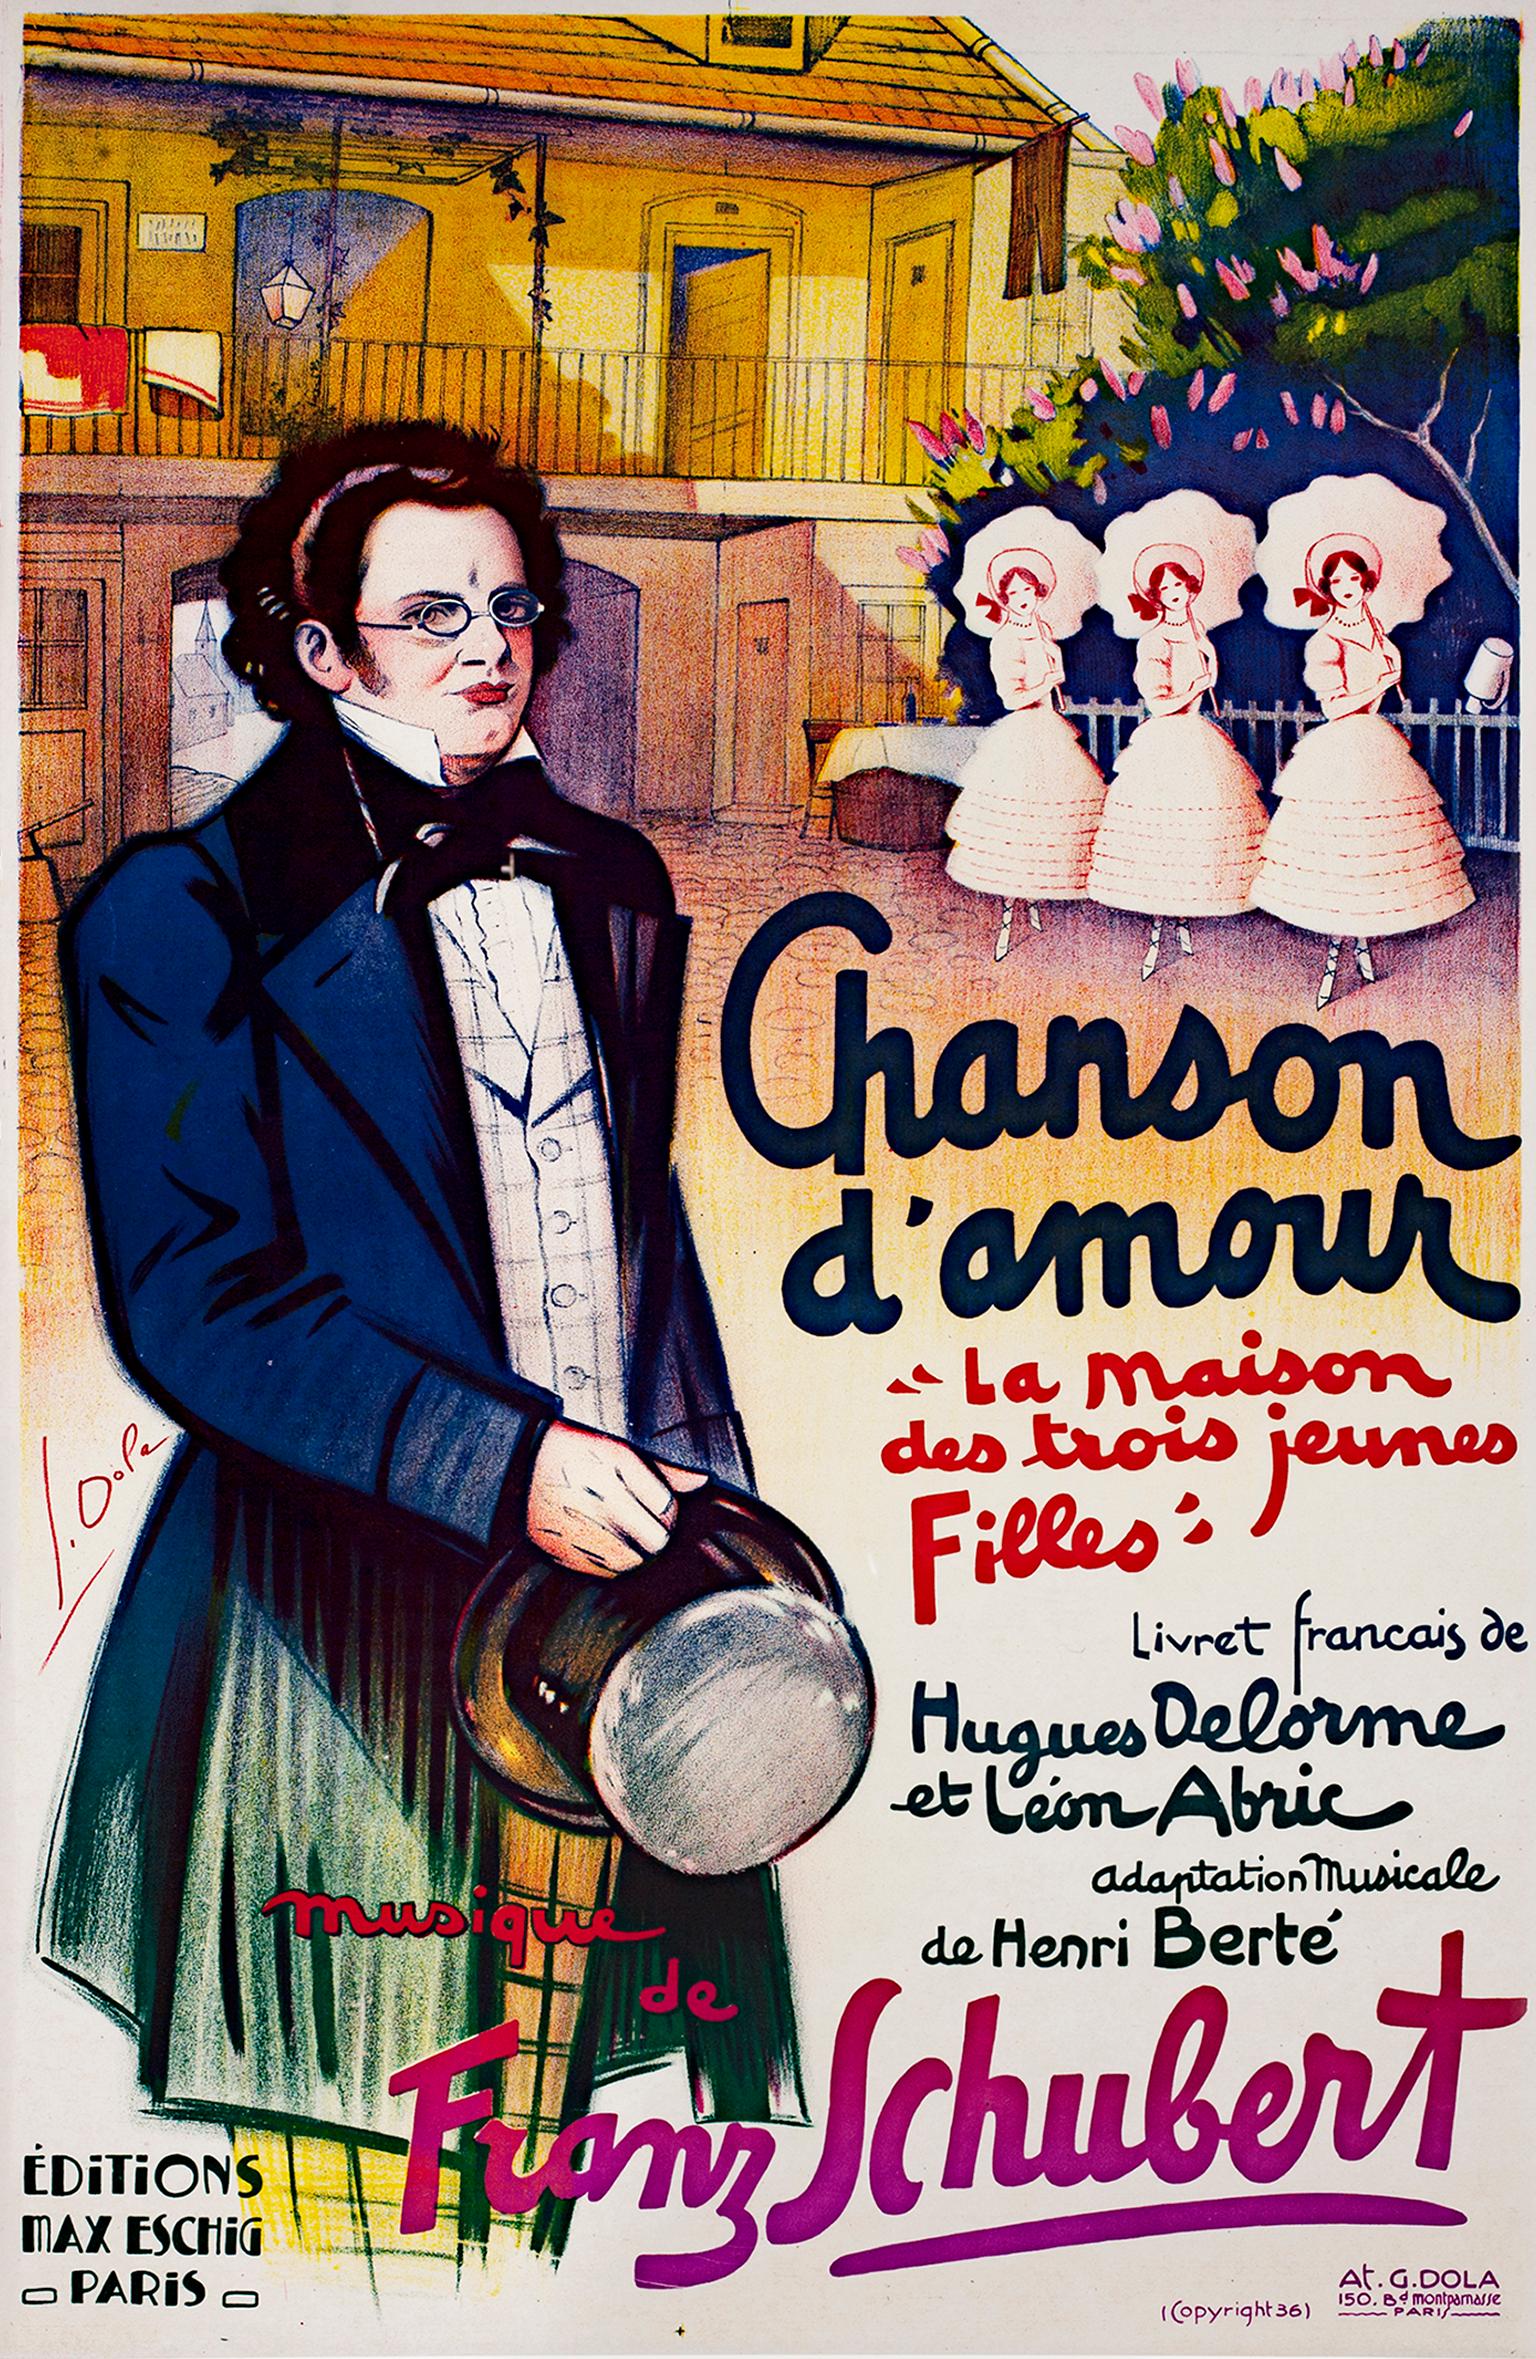 "Chanson d'Amour" ist ein original lithografiertes Plakat von Georges Dola. Der Künstler signierte das Bild auf der linken Seite von Franz Schubert. Dieses Plakat, das vom Club of America herausgegeben wurde, diente der Werbung für eine